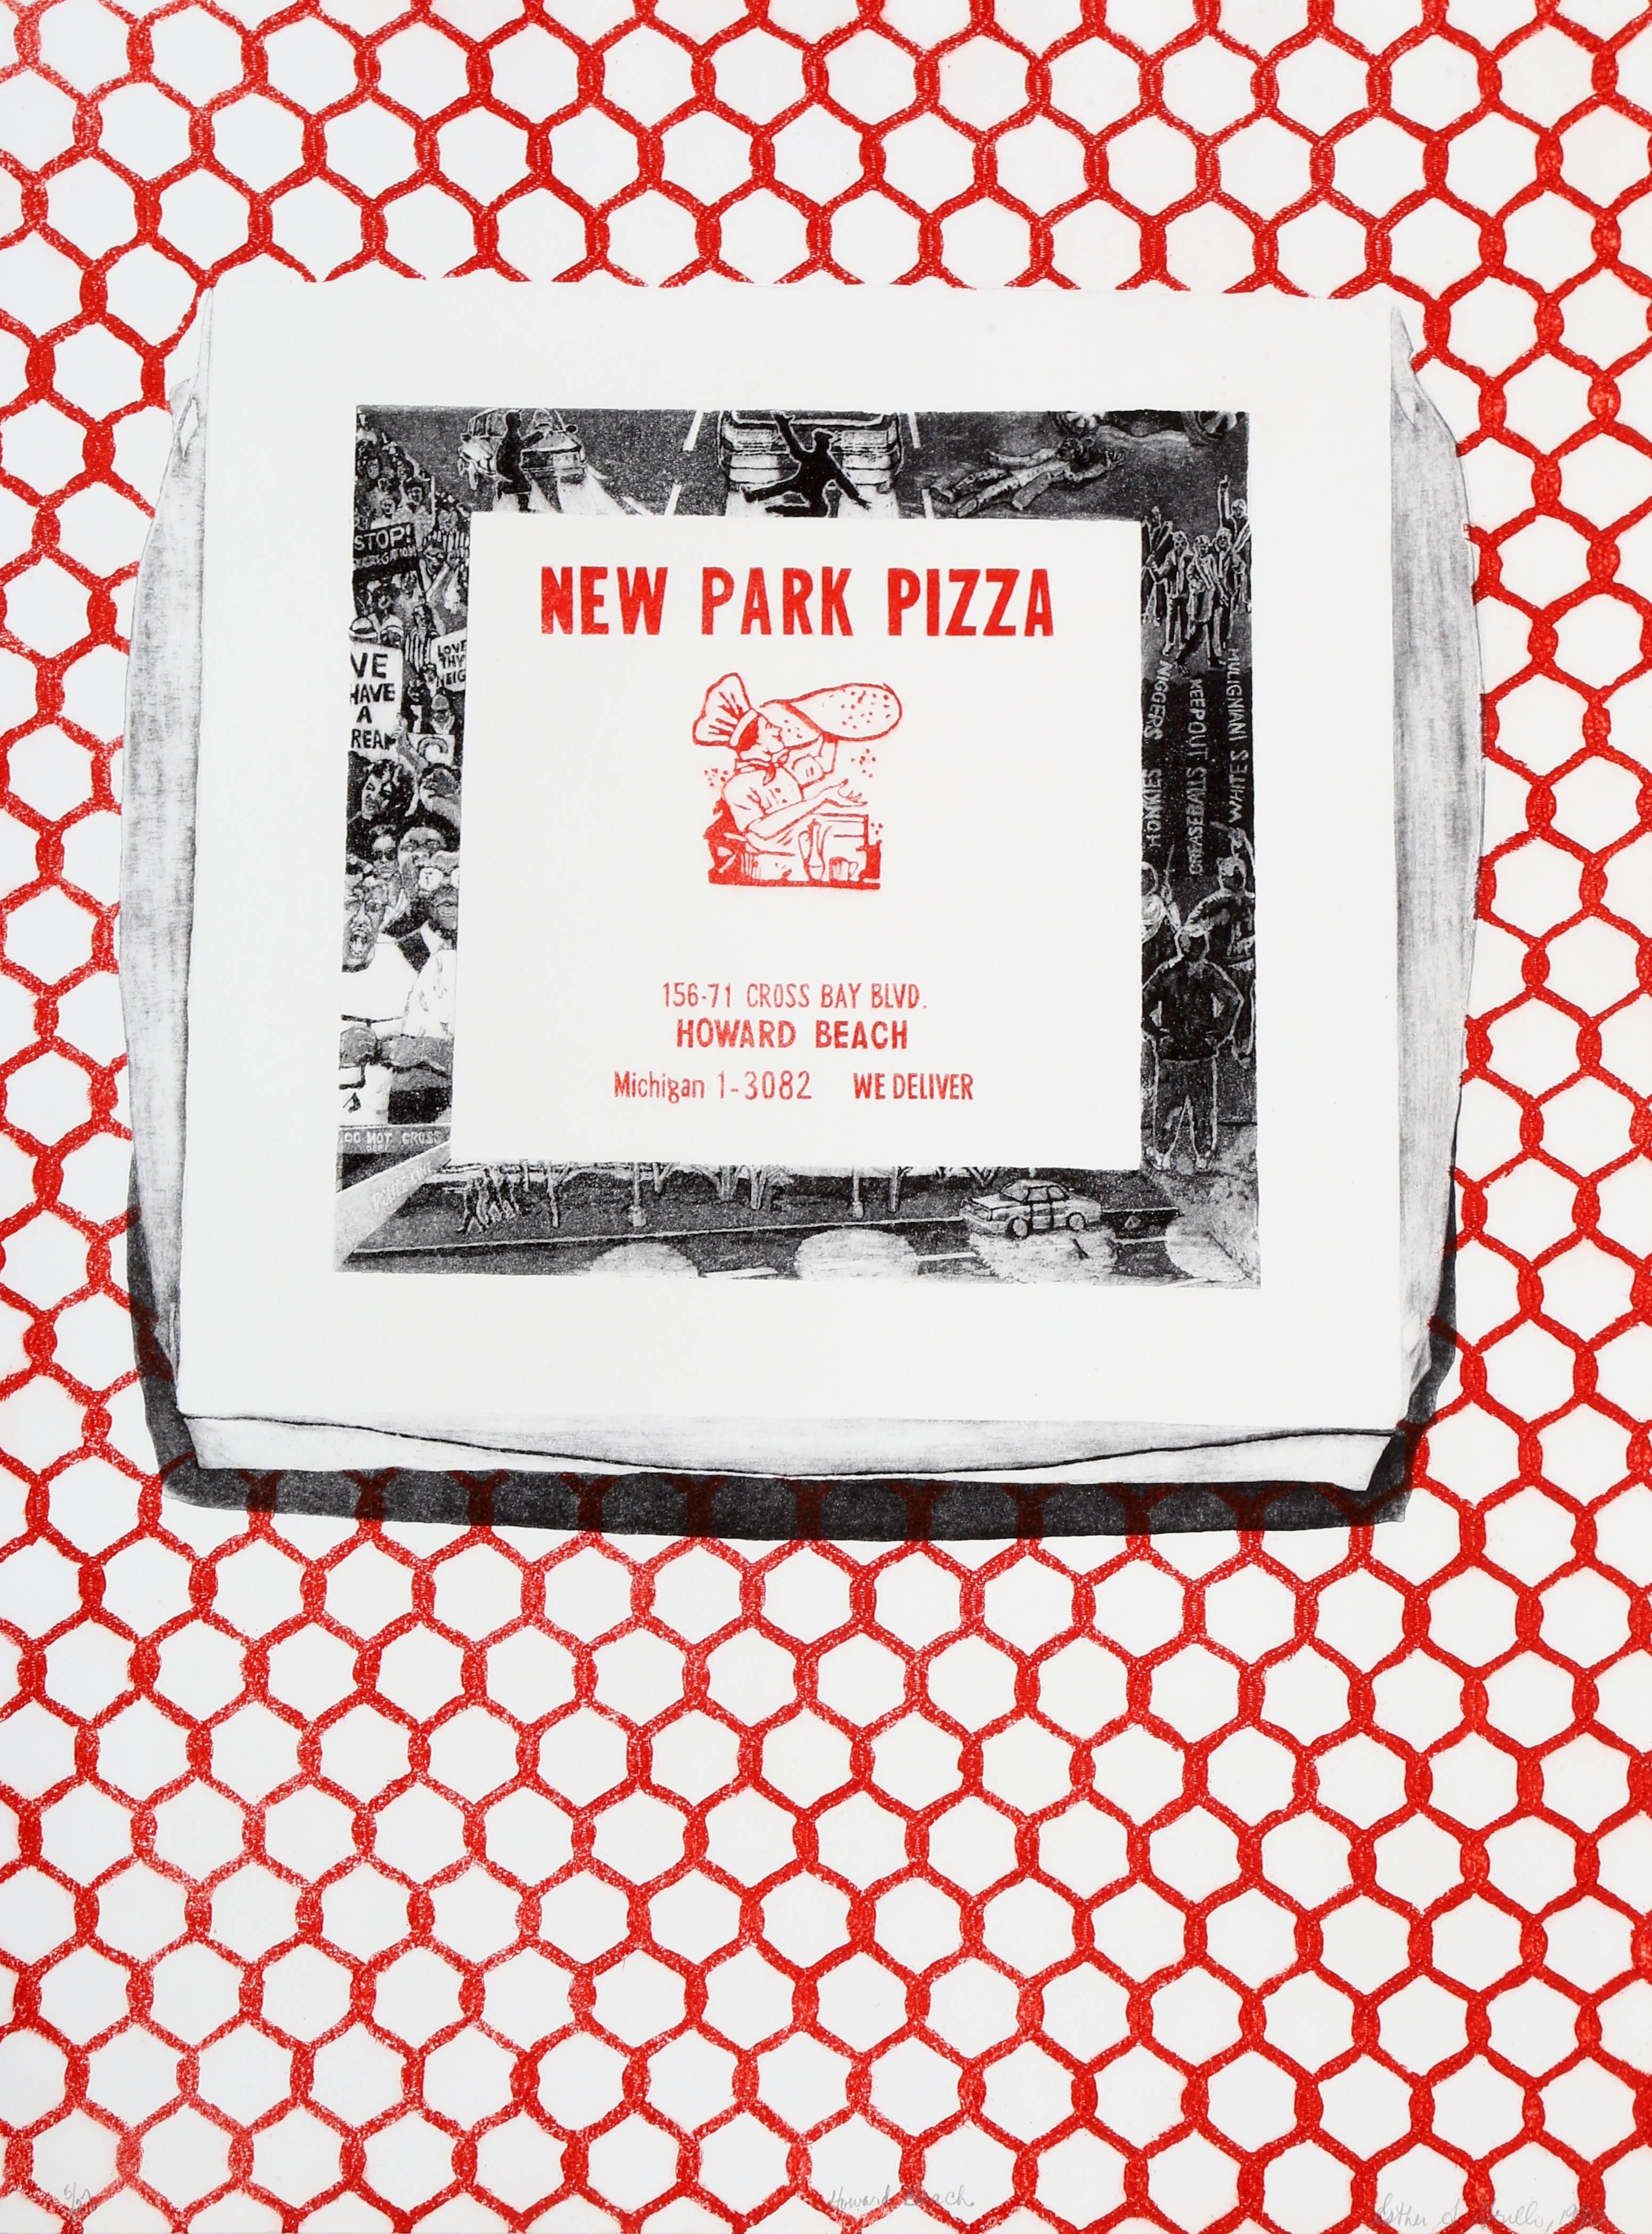 Künstlerin: Esther Grillo
Titel: Howard Beach (New Park Pizza)
Jahr: 1990
Medium: Siebdruck auf Arches, signiert und nummeriert mit Bleistift
Auflage: 50
Papierformat: 30 x 22 Zoll (76,2 x 55,88 cm)